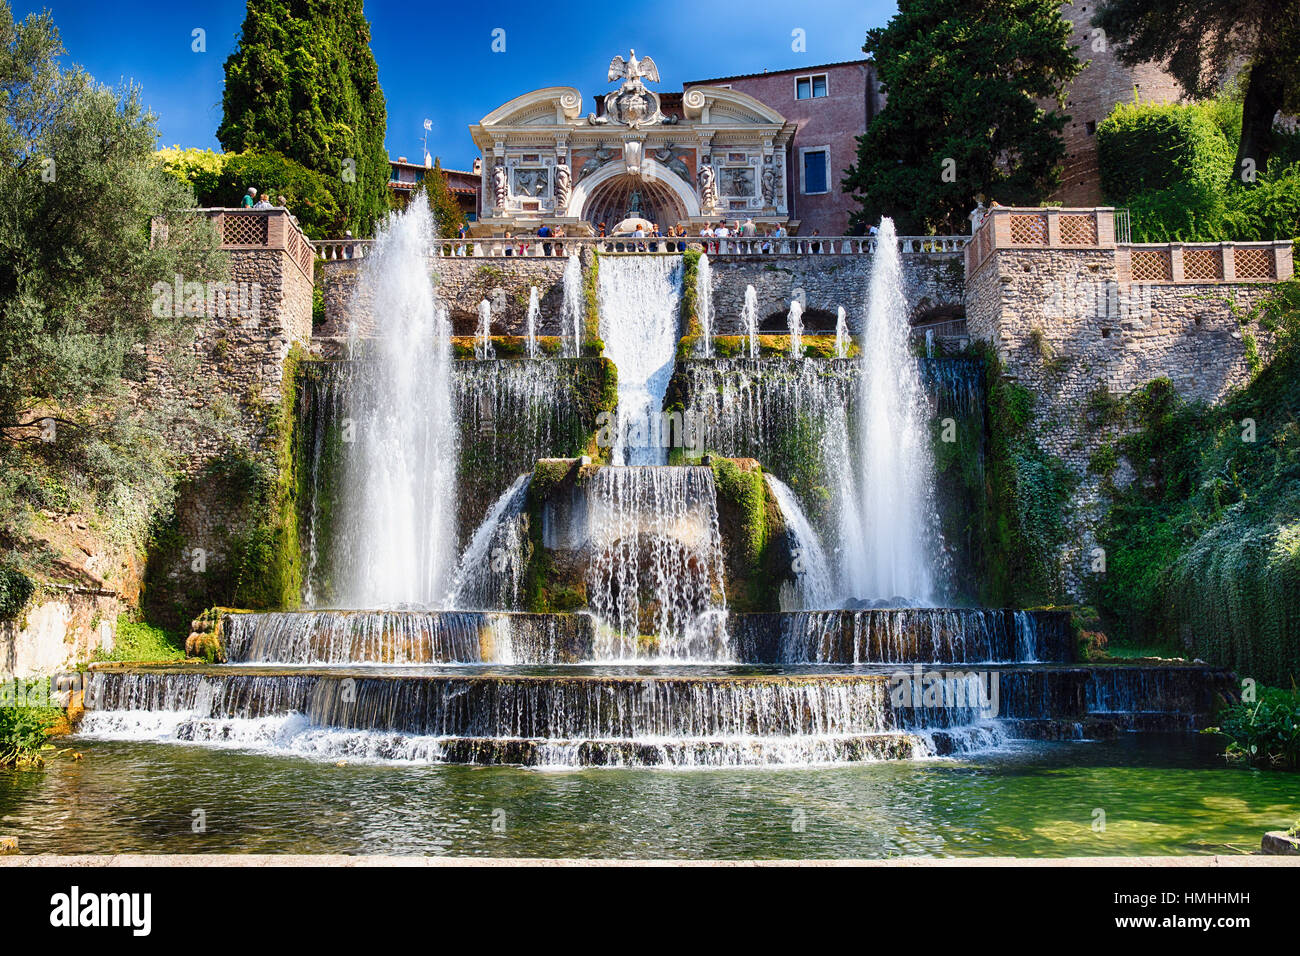 Basso angolo di vista la fontana del Nettuno, Villa d E'Ste, Tivoli, Lazio, Italia Foto Stock